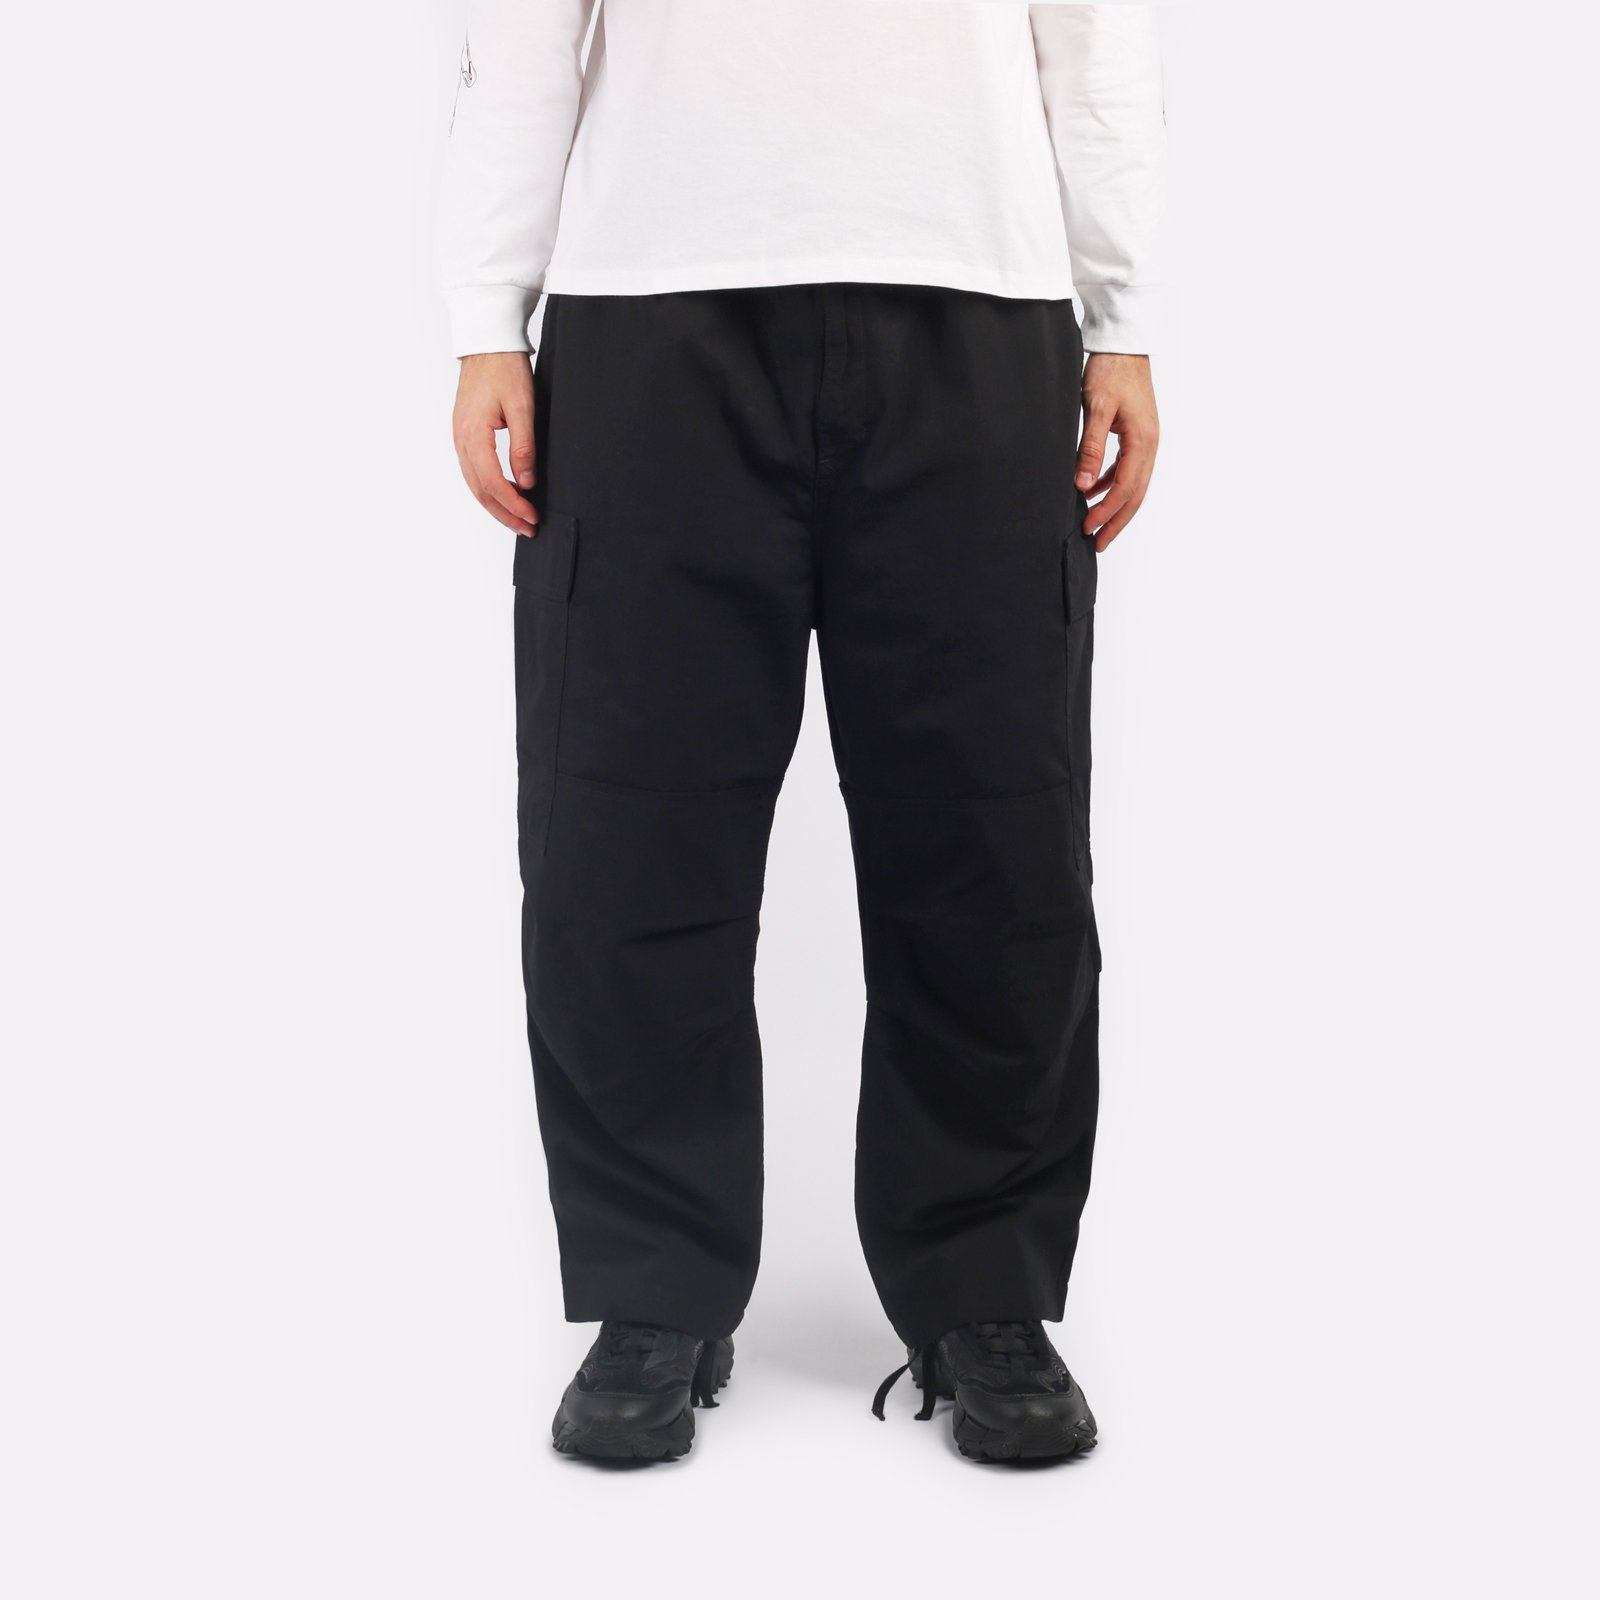 мужские брюки Carhartt WIP Jet Cargo Pant  (I032967-black)  - цена, описание, фото 1